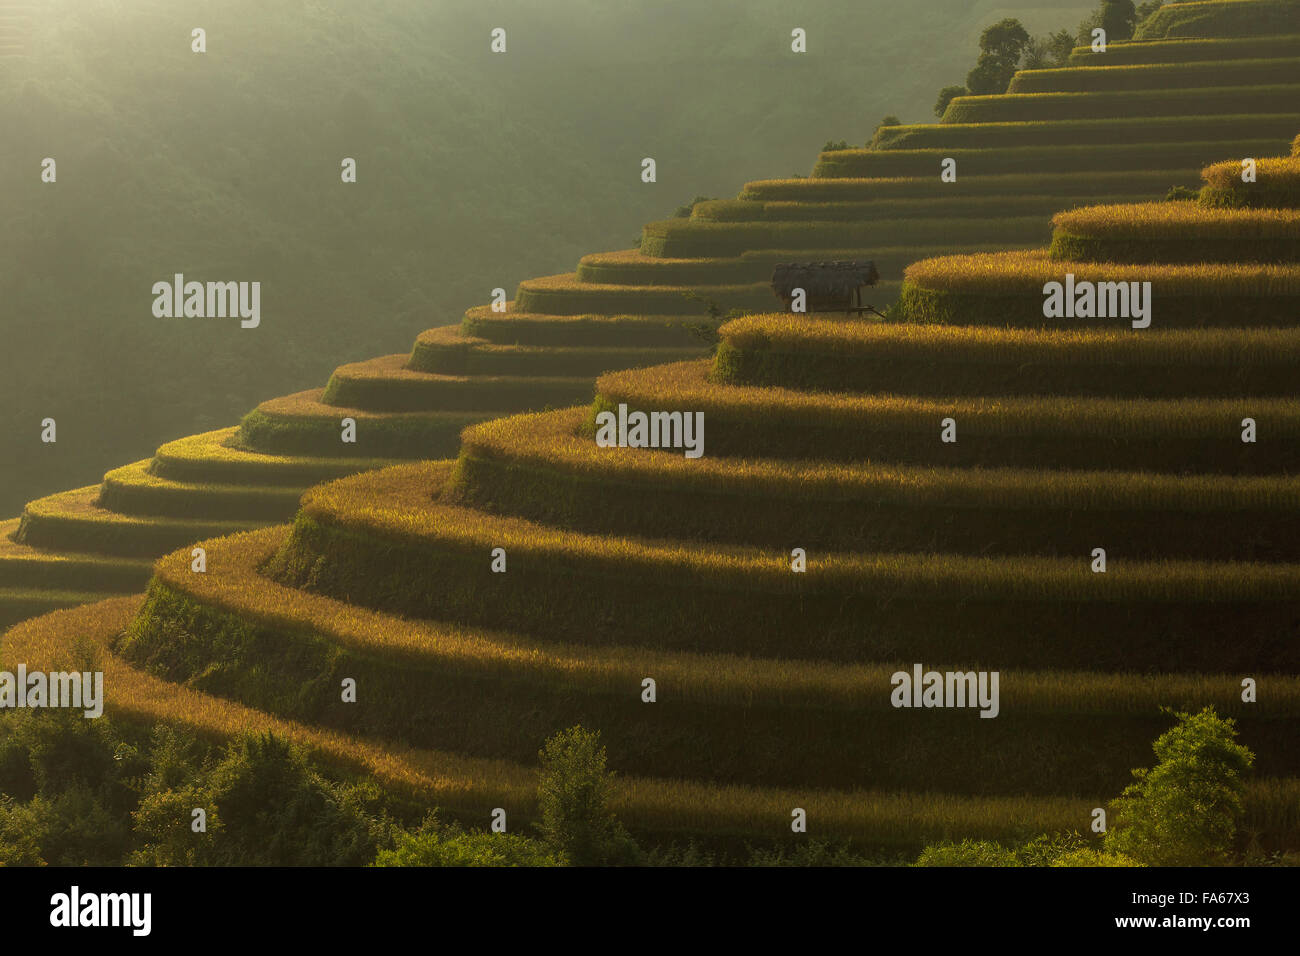 Rice terraces, Vietnam Stock Photo